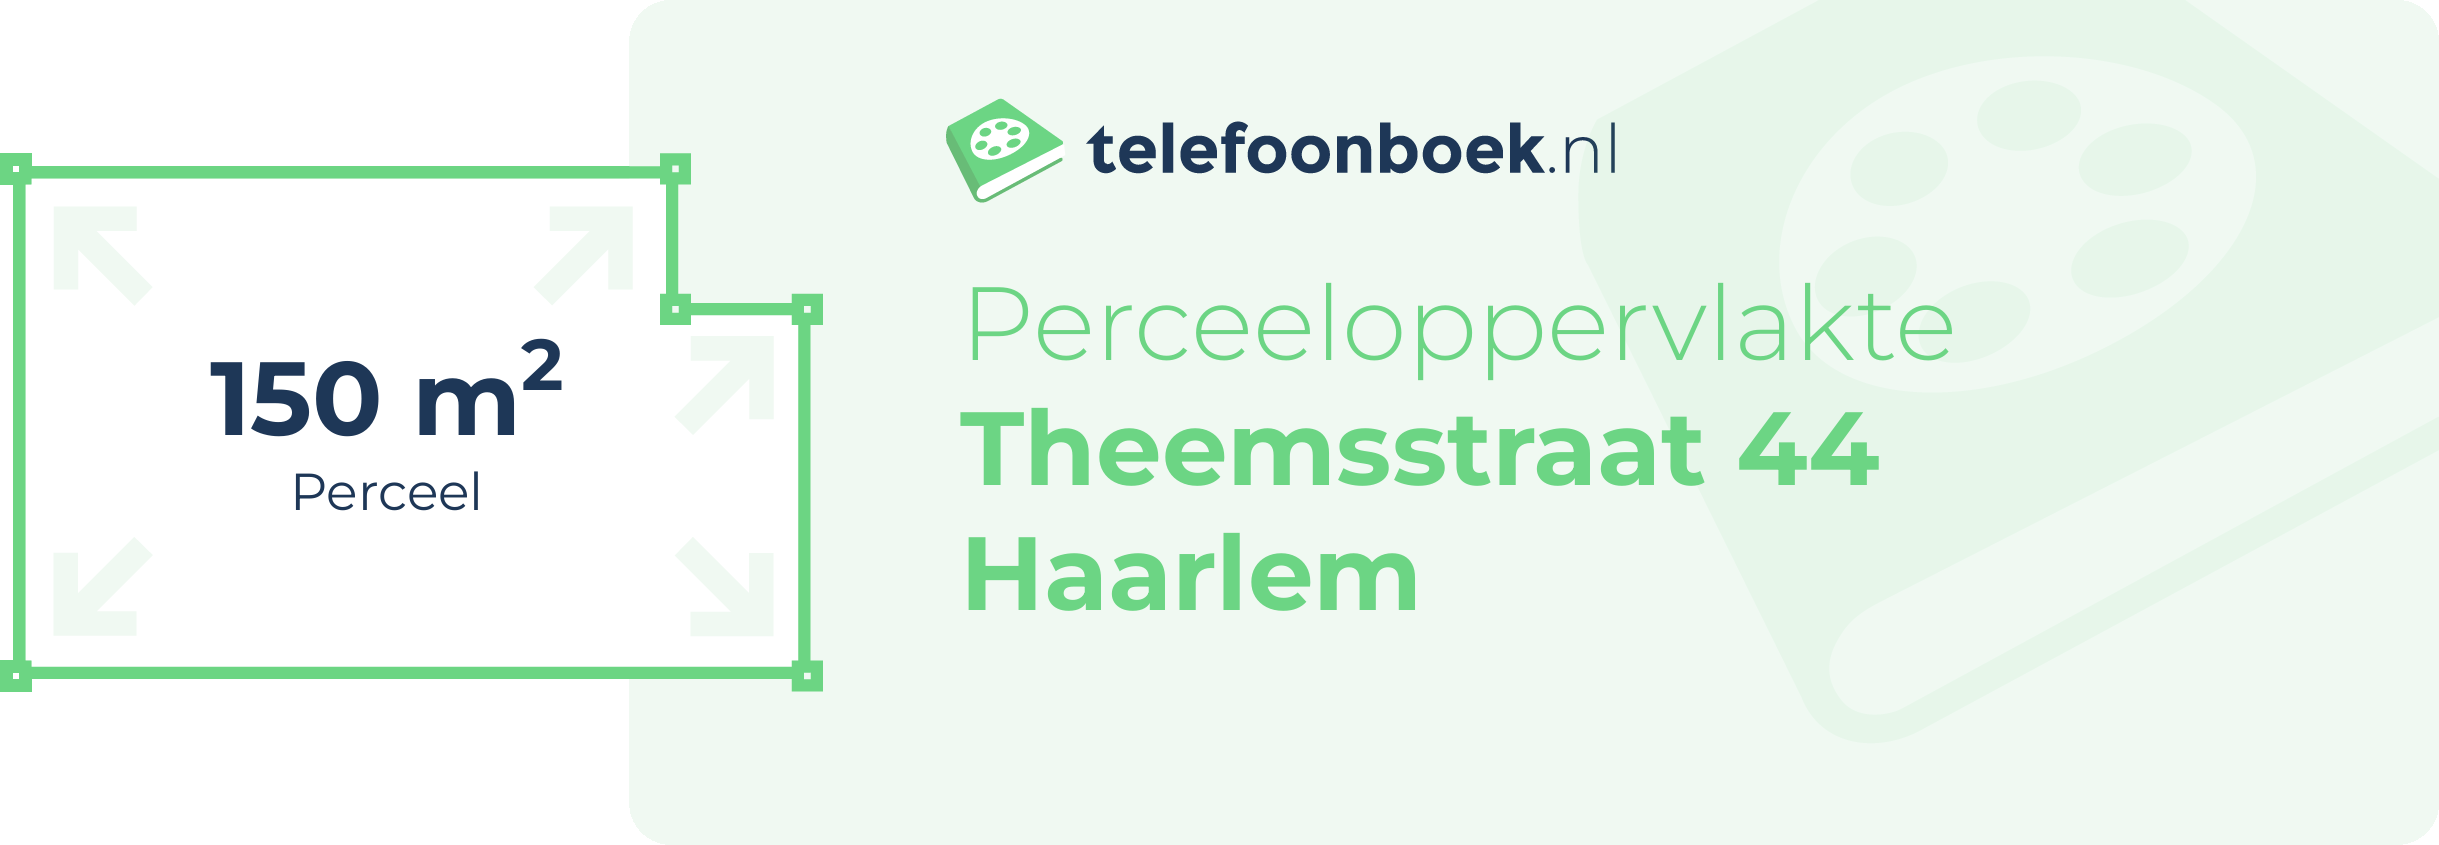 Perceeloppervlakte Theemsstraat 44 Haarlem